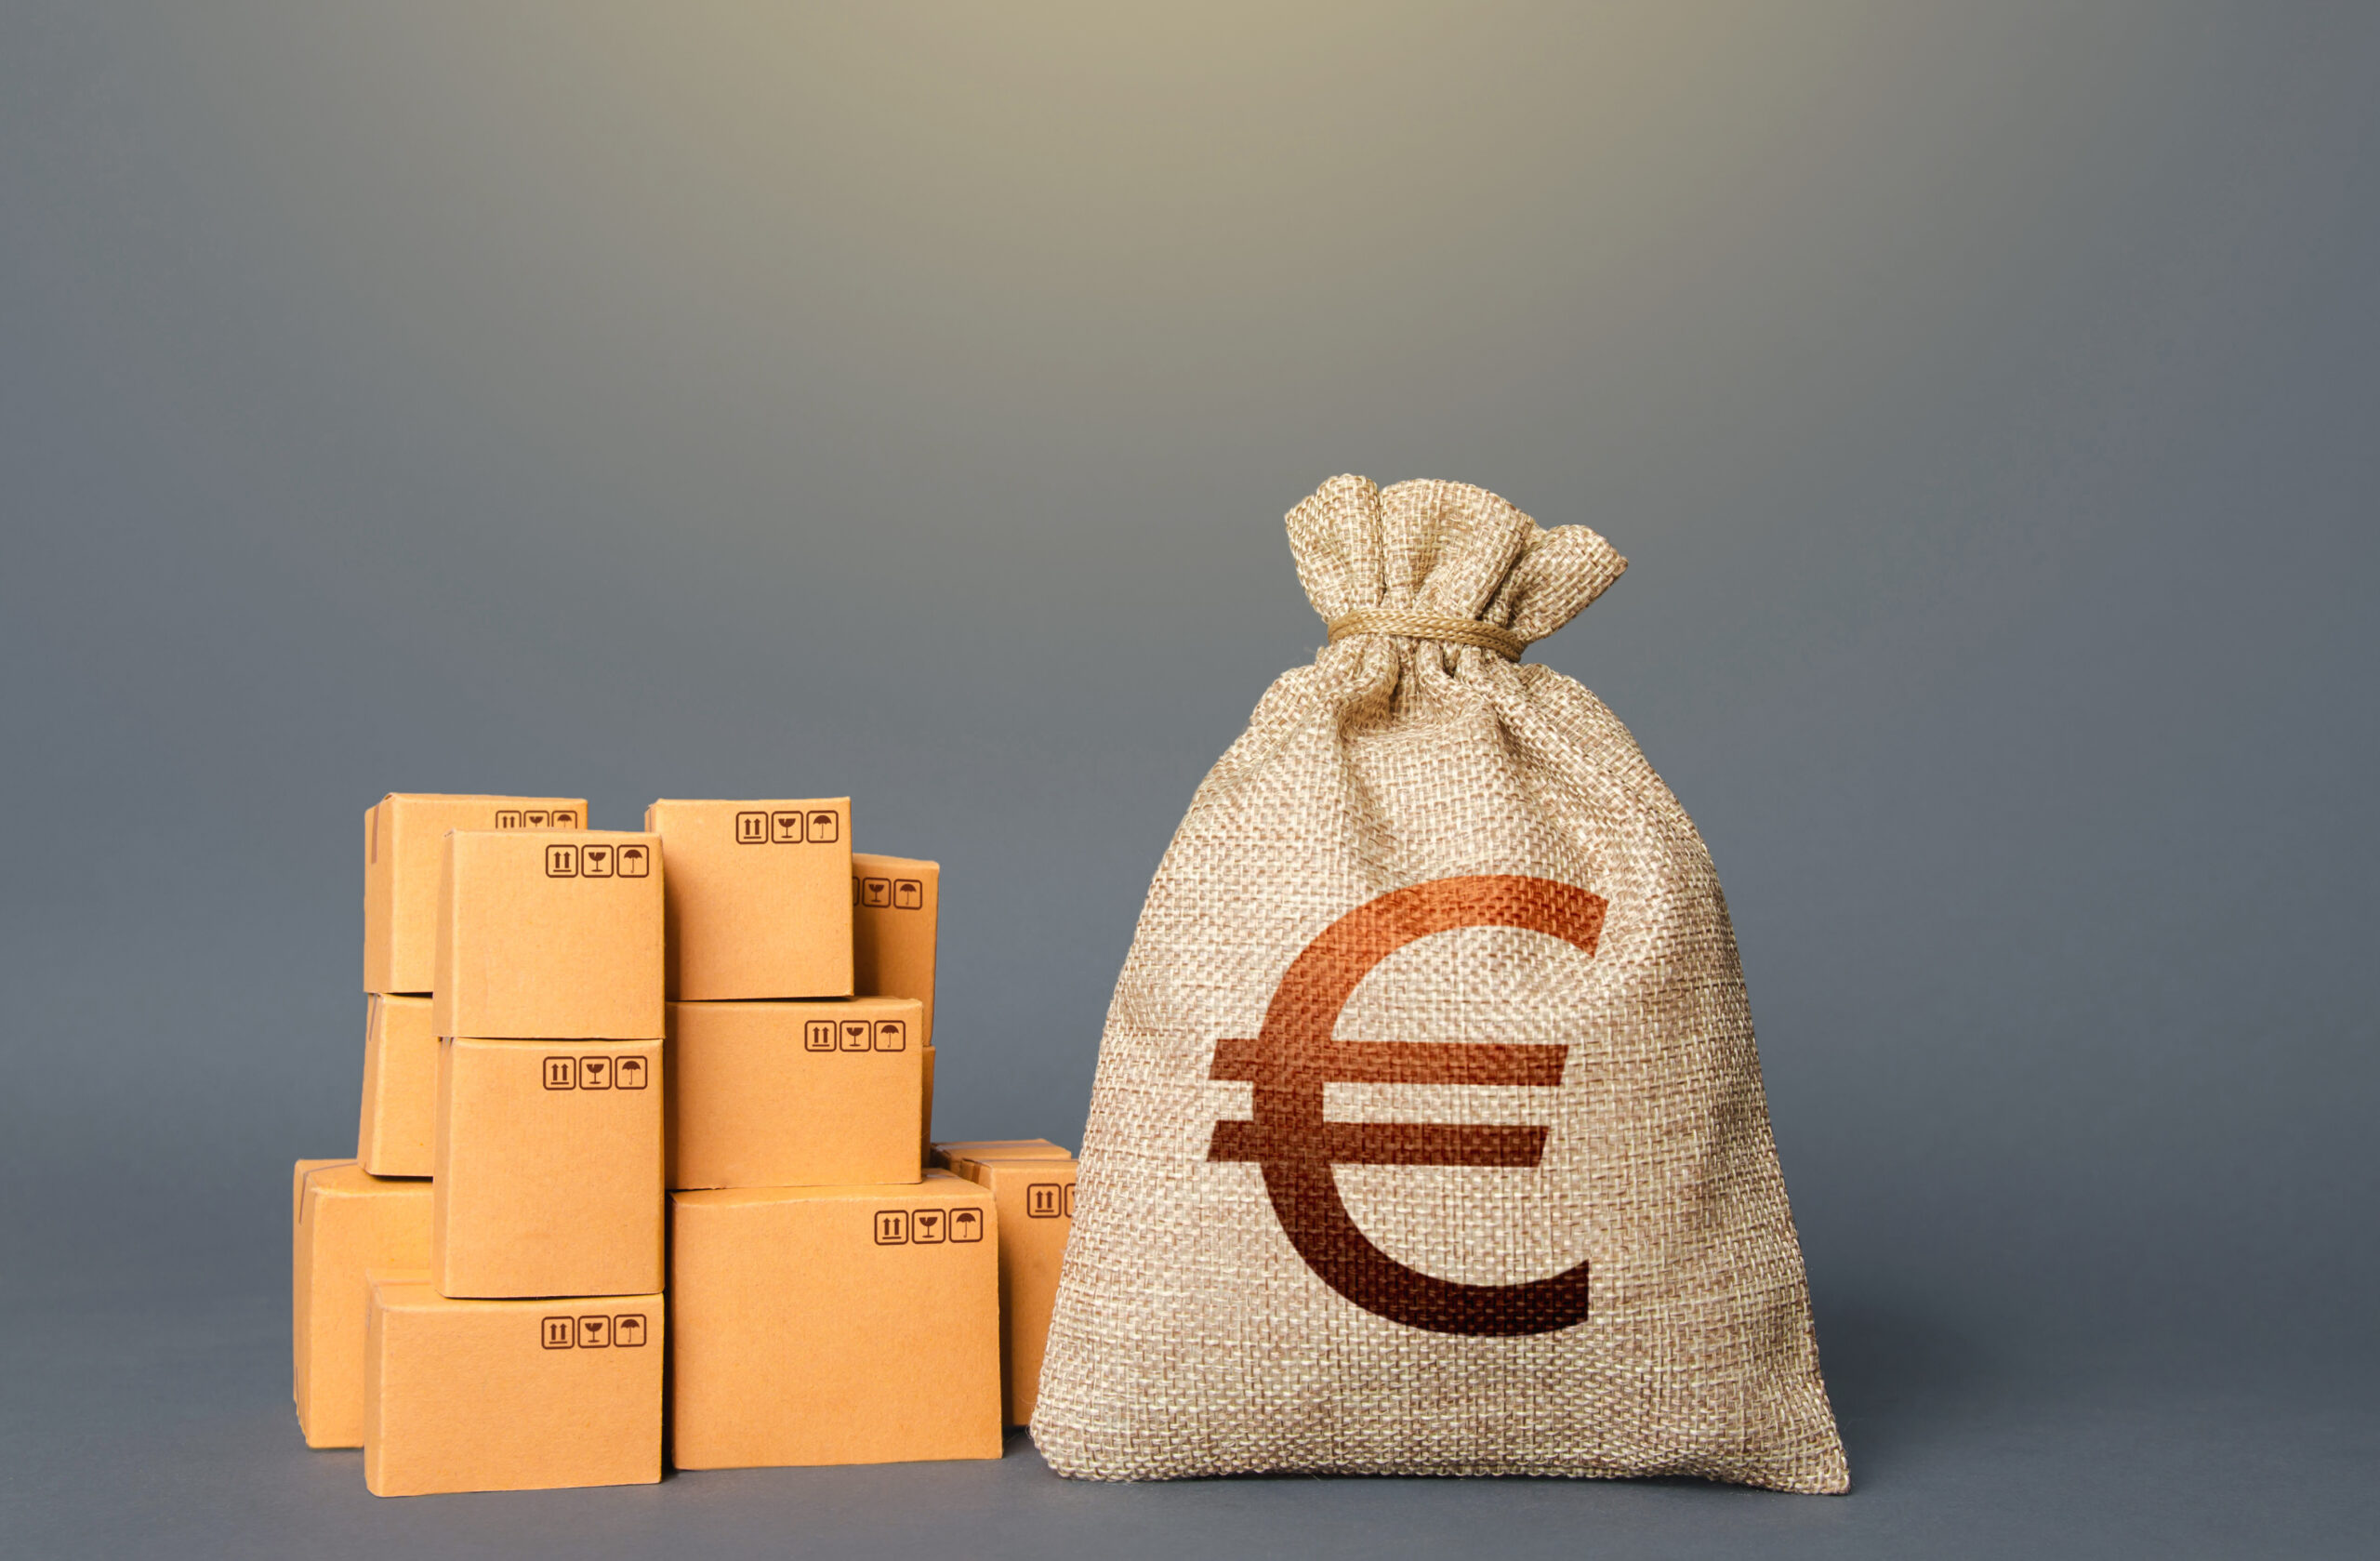 Lire la suite à propos de l’article Pourquoi l’euro perd de la valeur face au dollar? – Waxoo.fr, 8 mars 2022″ –> « Pourquoi l’euro perd de la valeur face au dollar? – Waxoo.fr